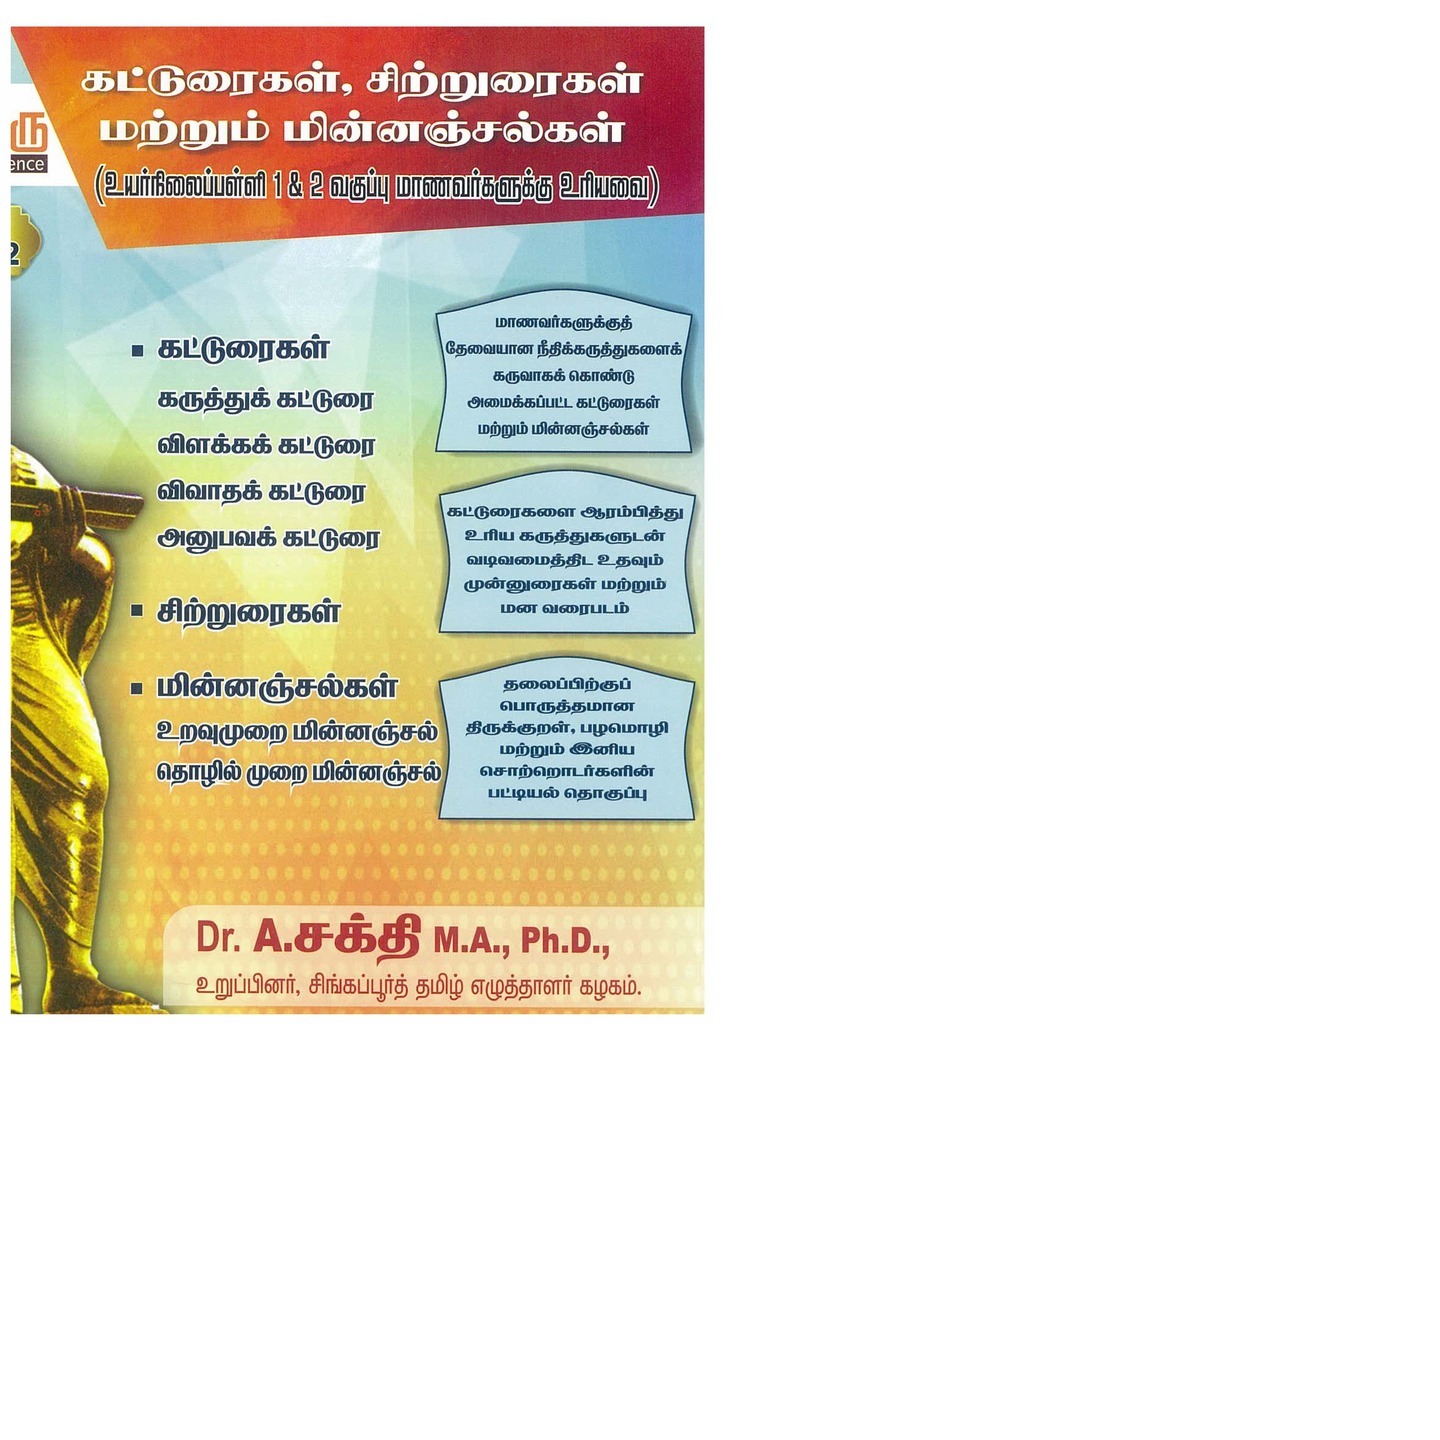 TamilGuru Kattooraigal, Sittruraigal, Minnanjal with Mind Maps